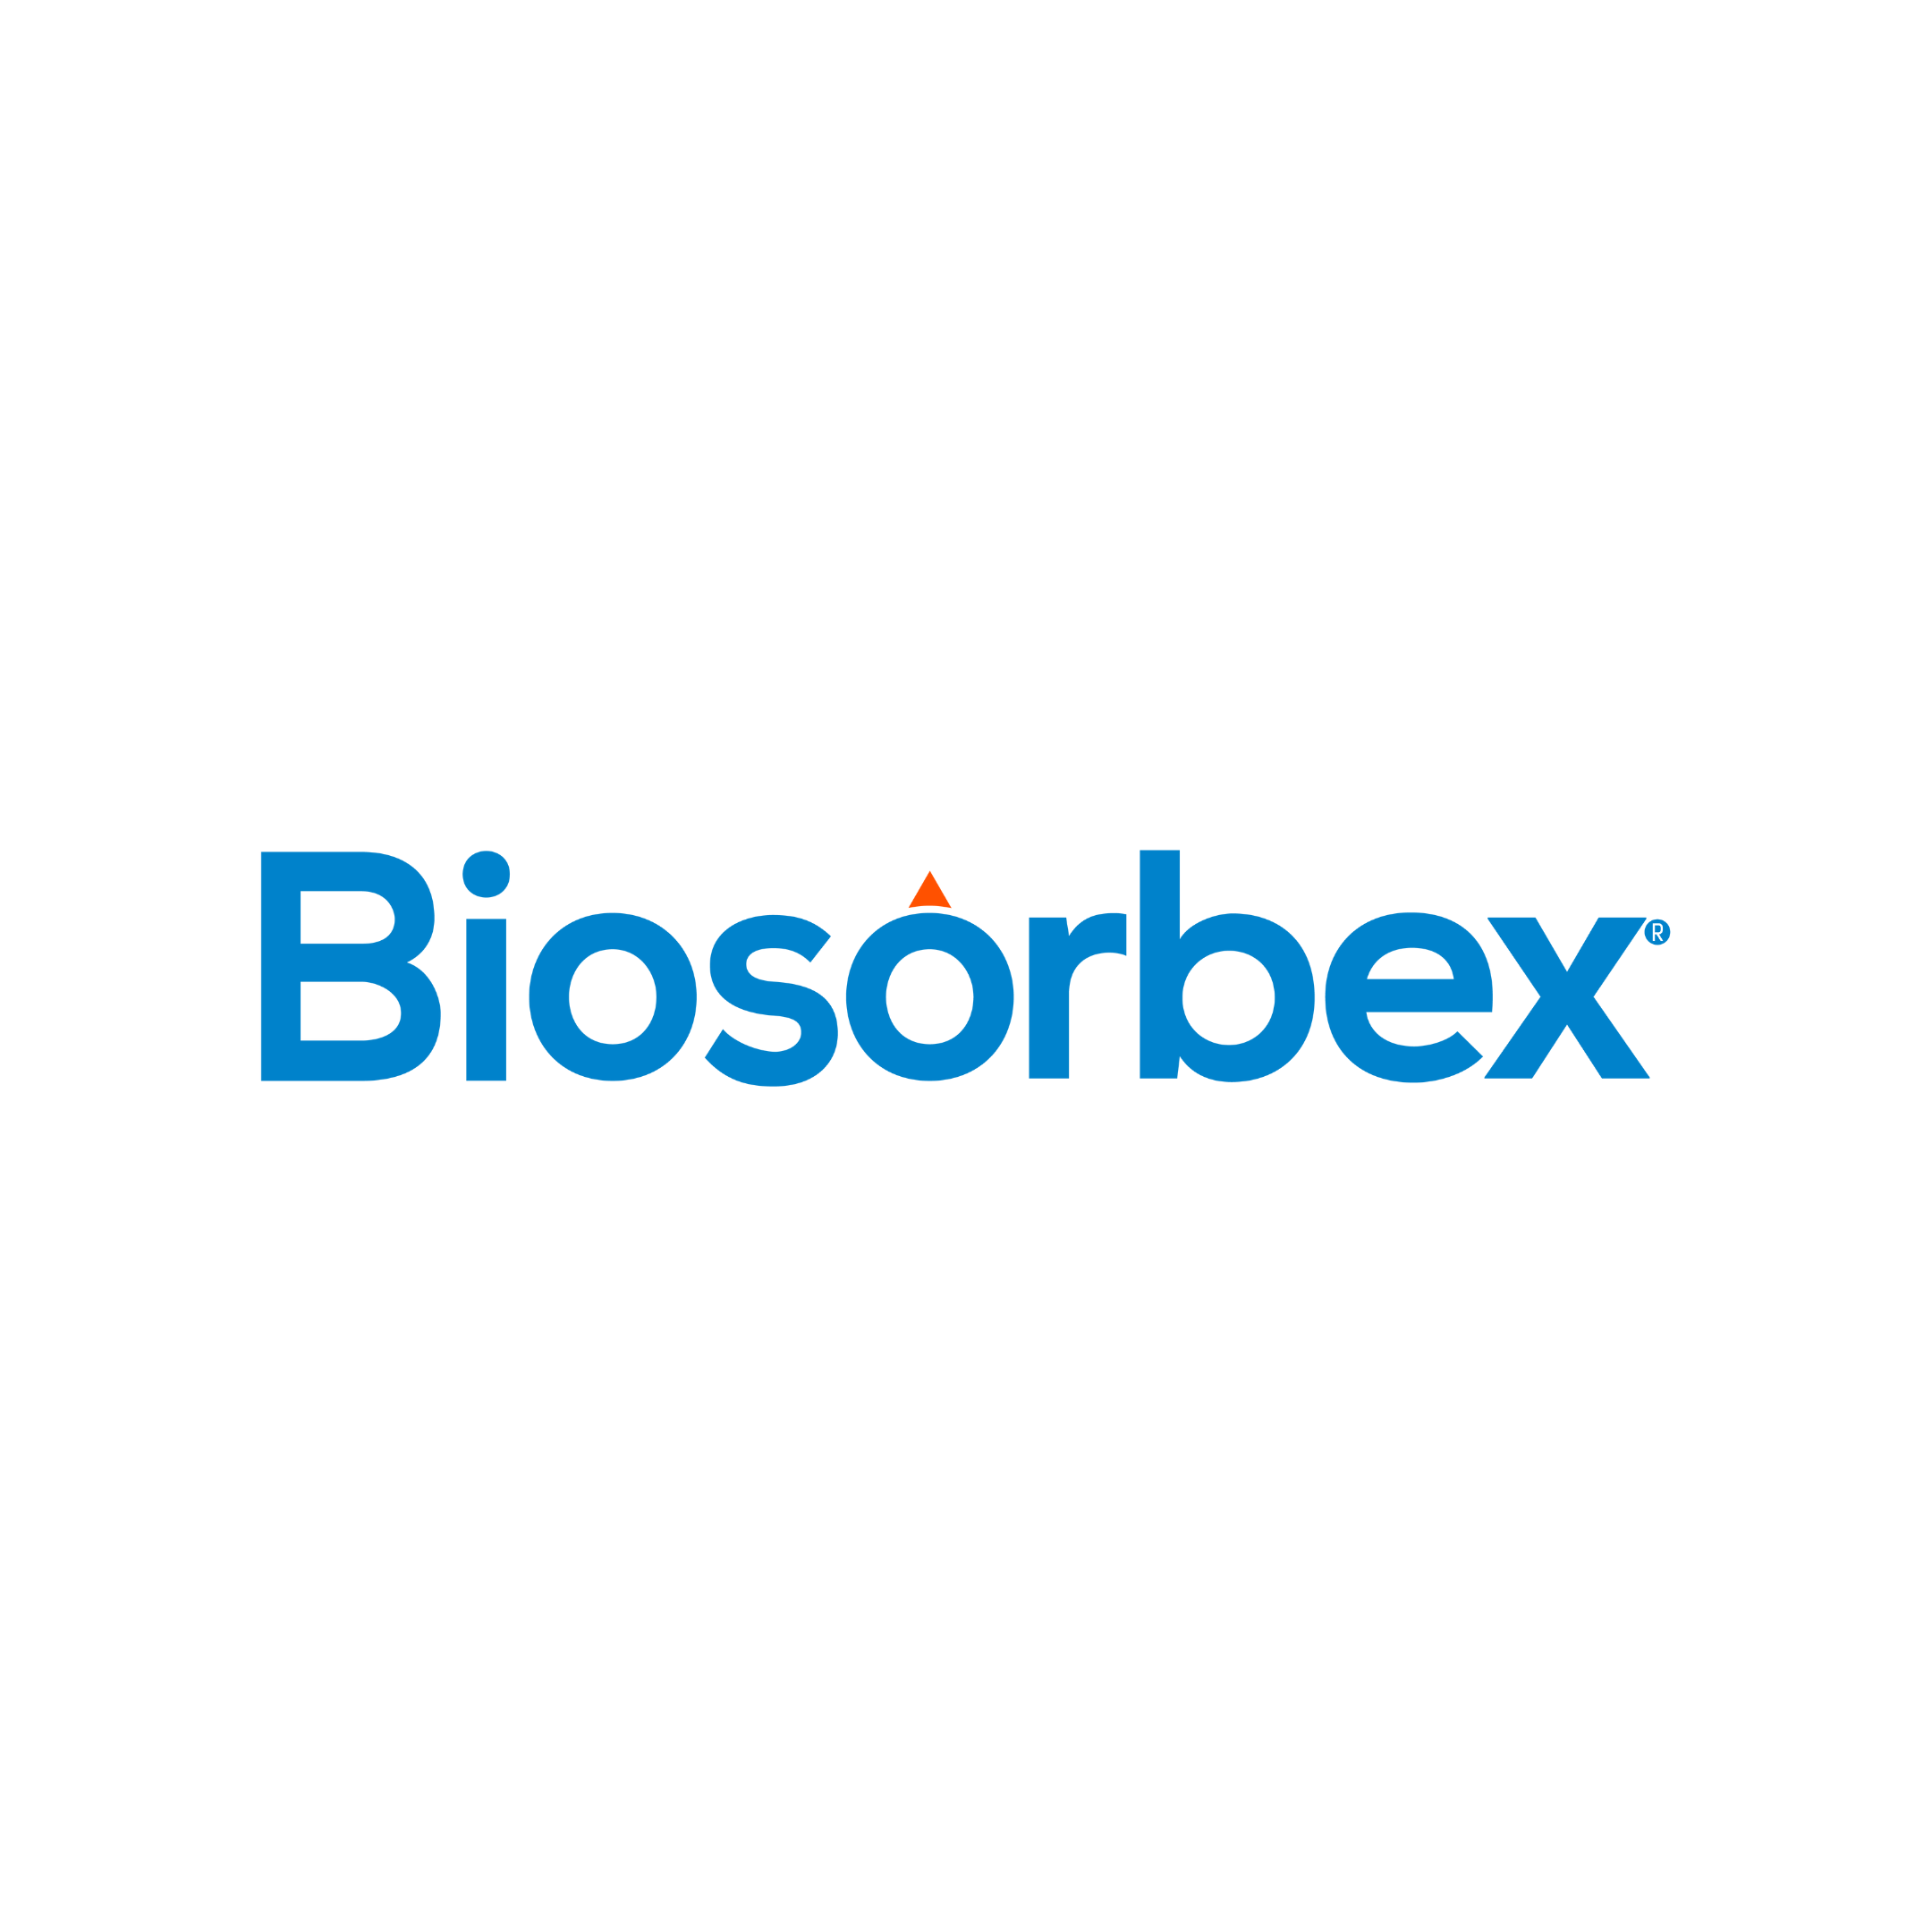 Biosorbex 1.png